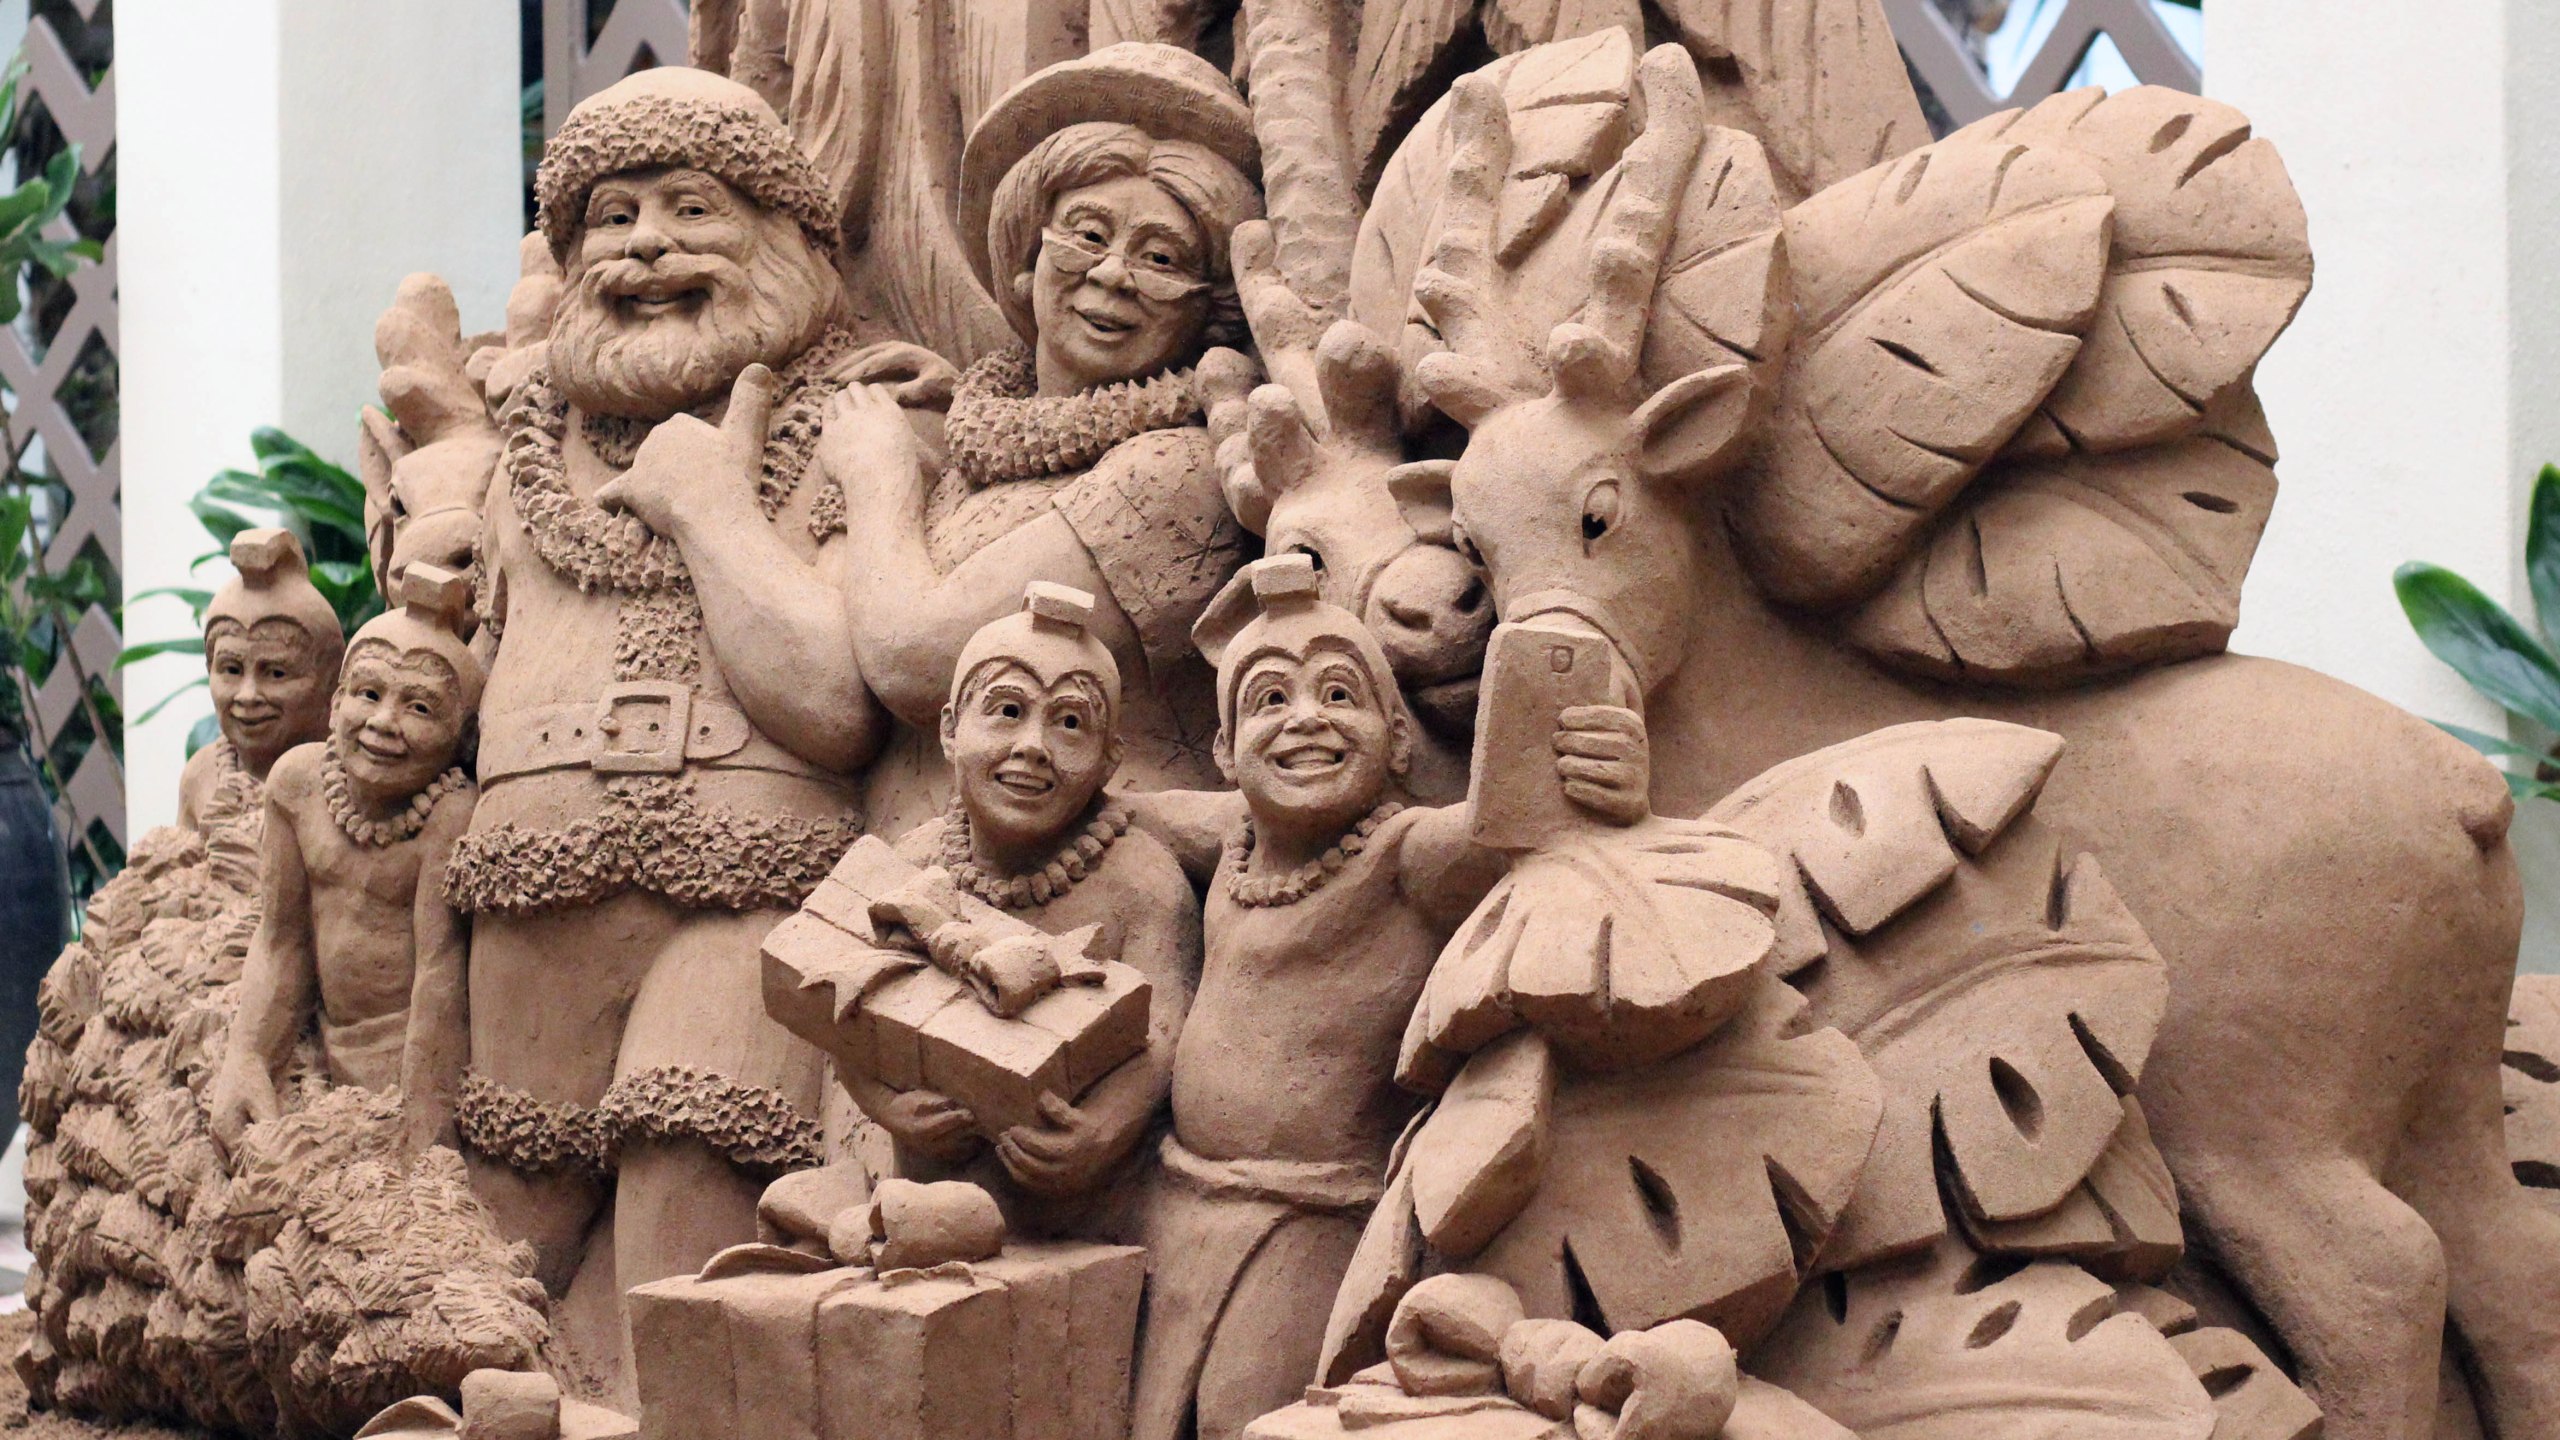 Sand Sculptures Bring Holiday Spirit To Sheraton Waikiki